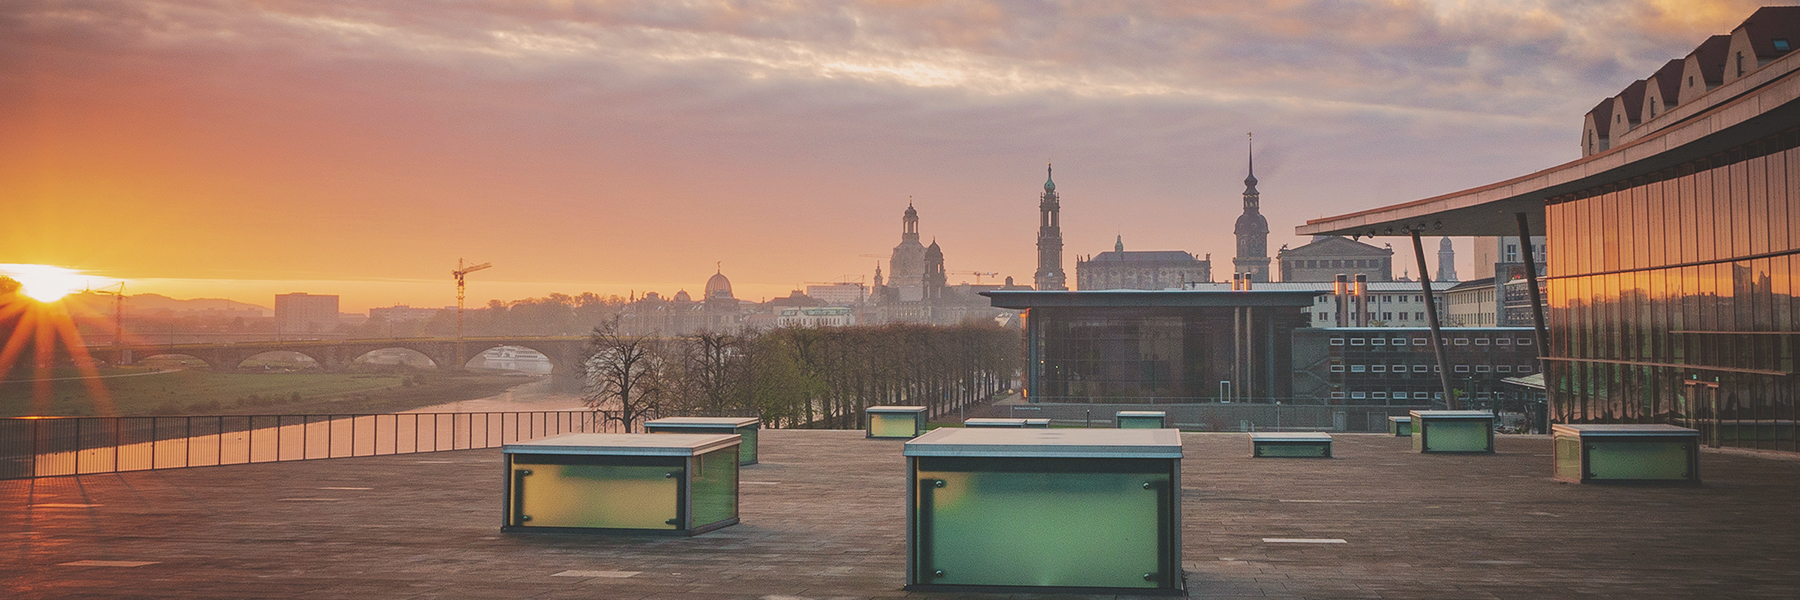 Blick vom Internationalen Congress Center auf die Silhouette Dresdens